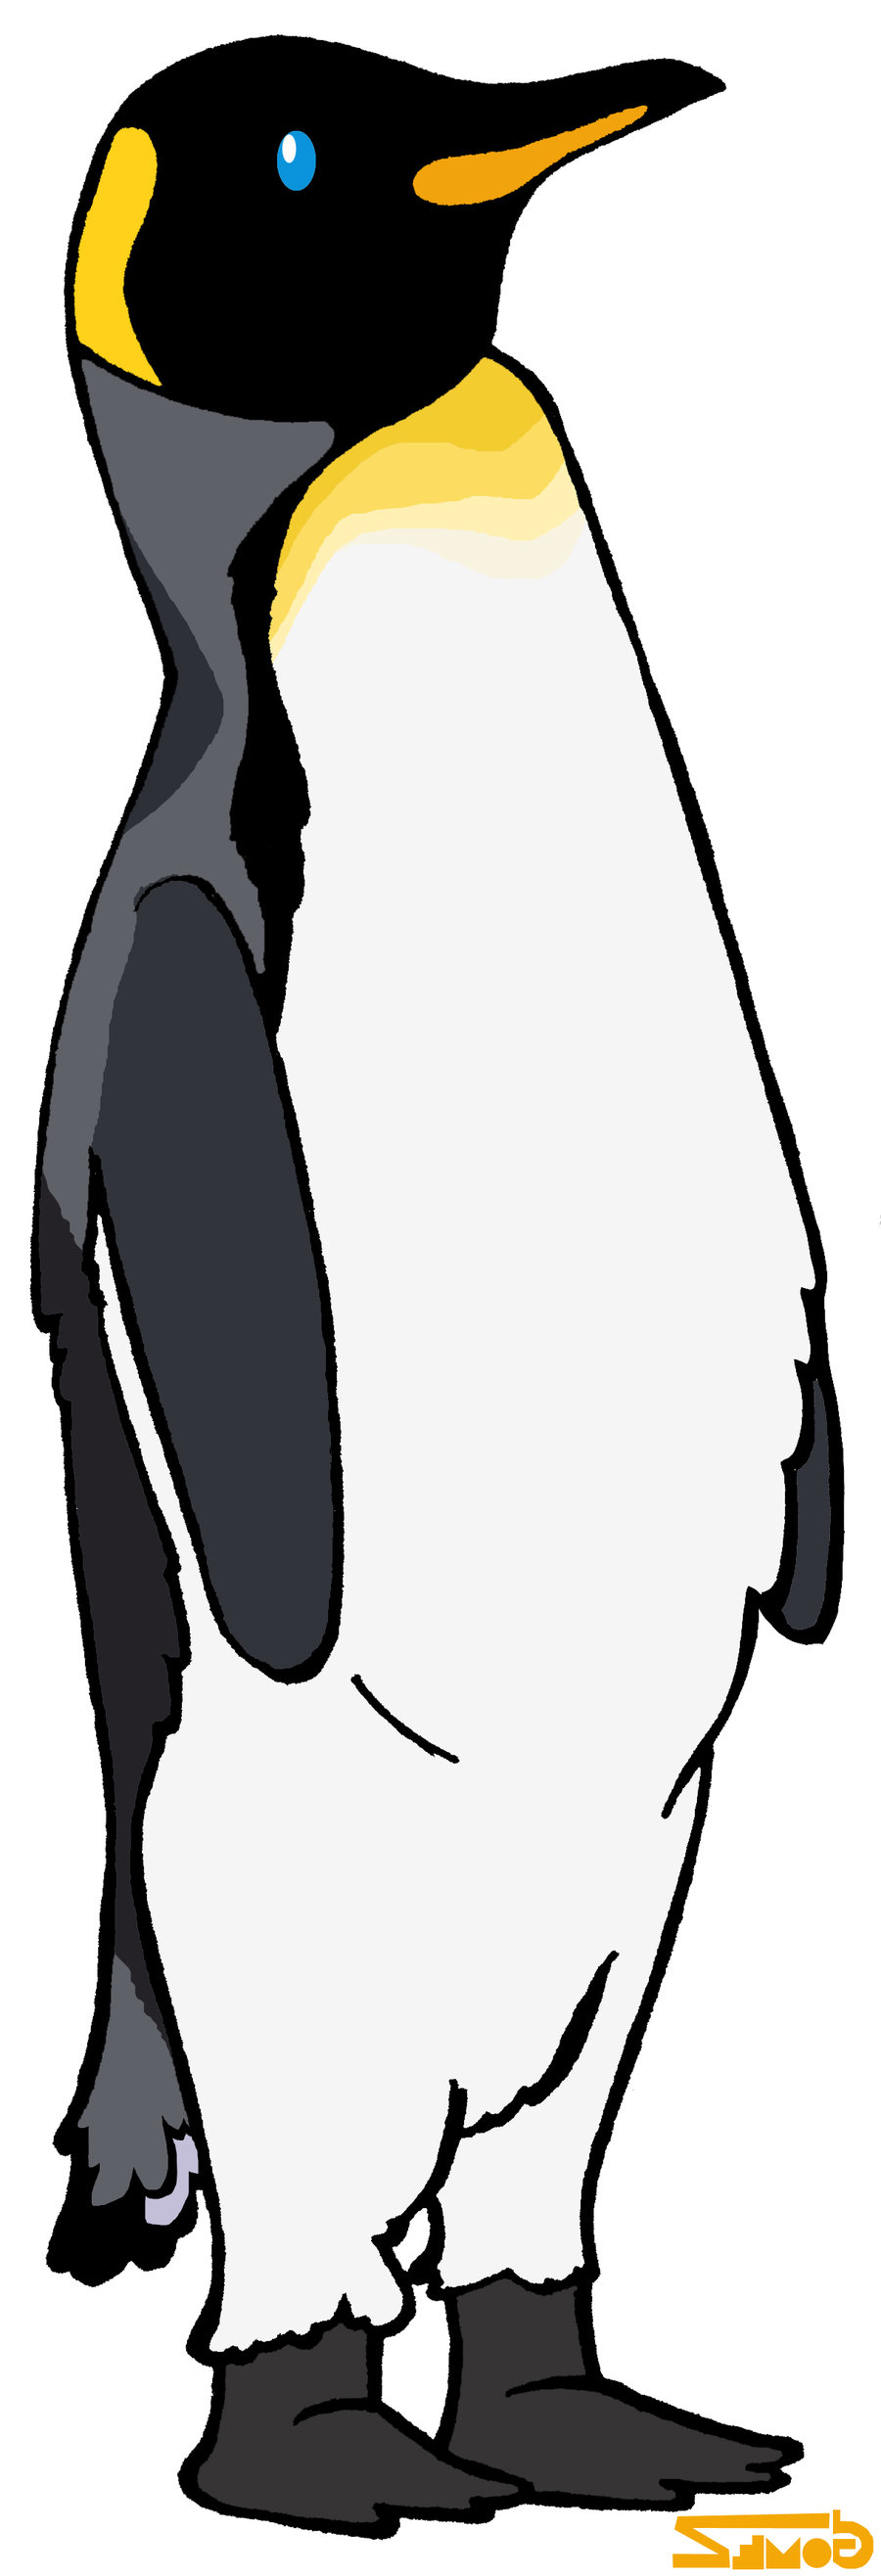 Penguin Cartoons Pictures | Images Guru